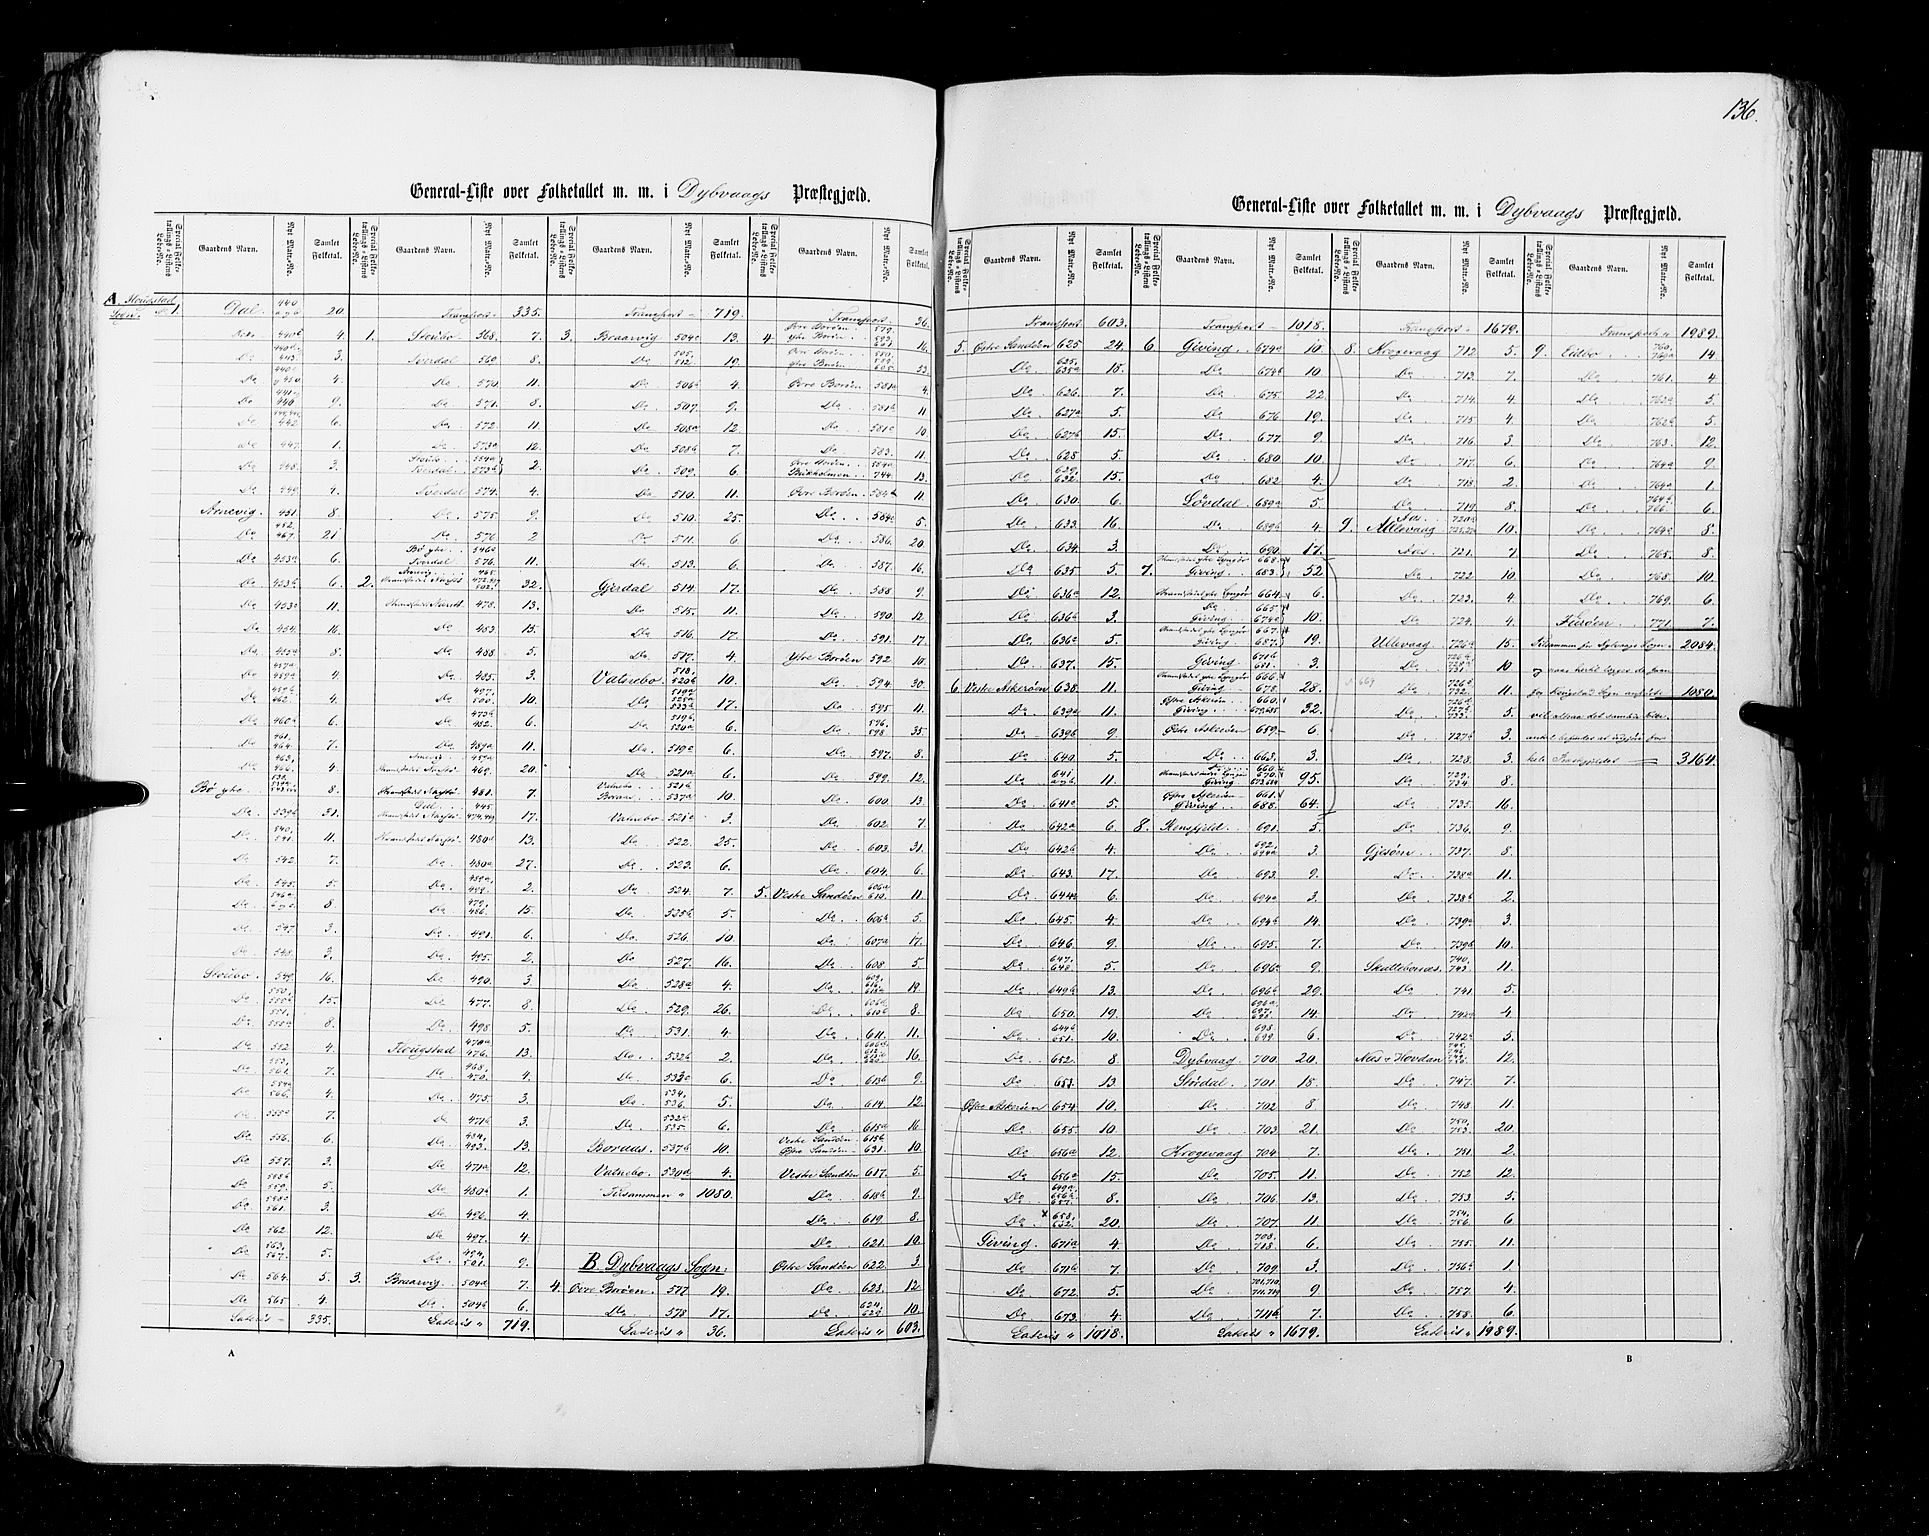 RA, Census 1855, vol. 3: Bratsberg amt, Nedenes amt og Lister og Mandal amt, 1855, p. 136